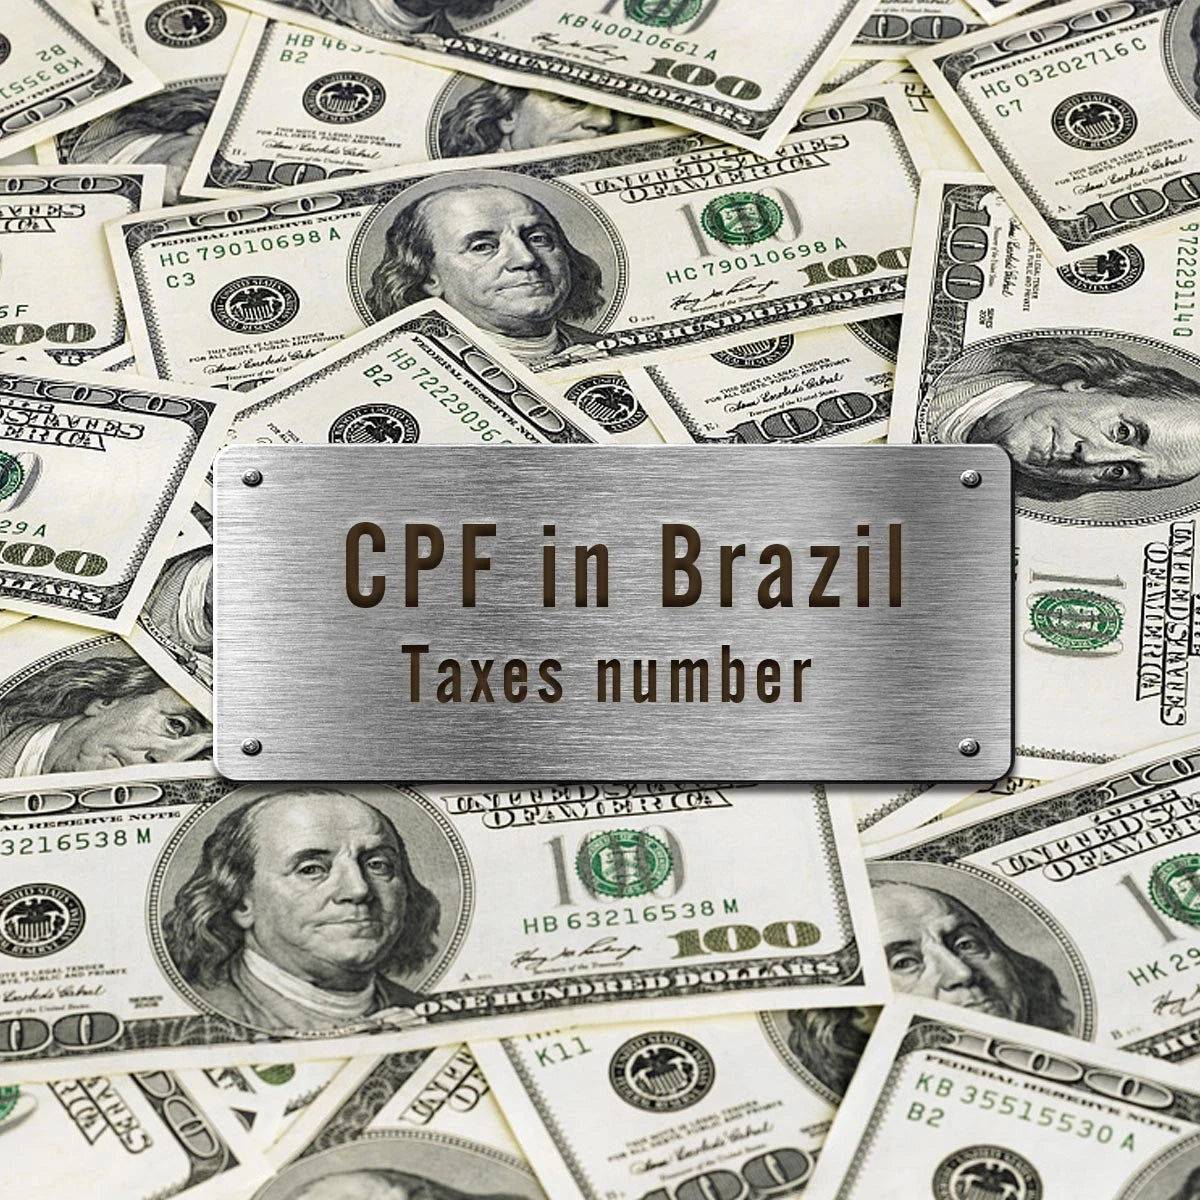 Tutti gli ordini (Brasile) richiedono il codice fiscale (CPF)